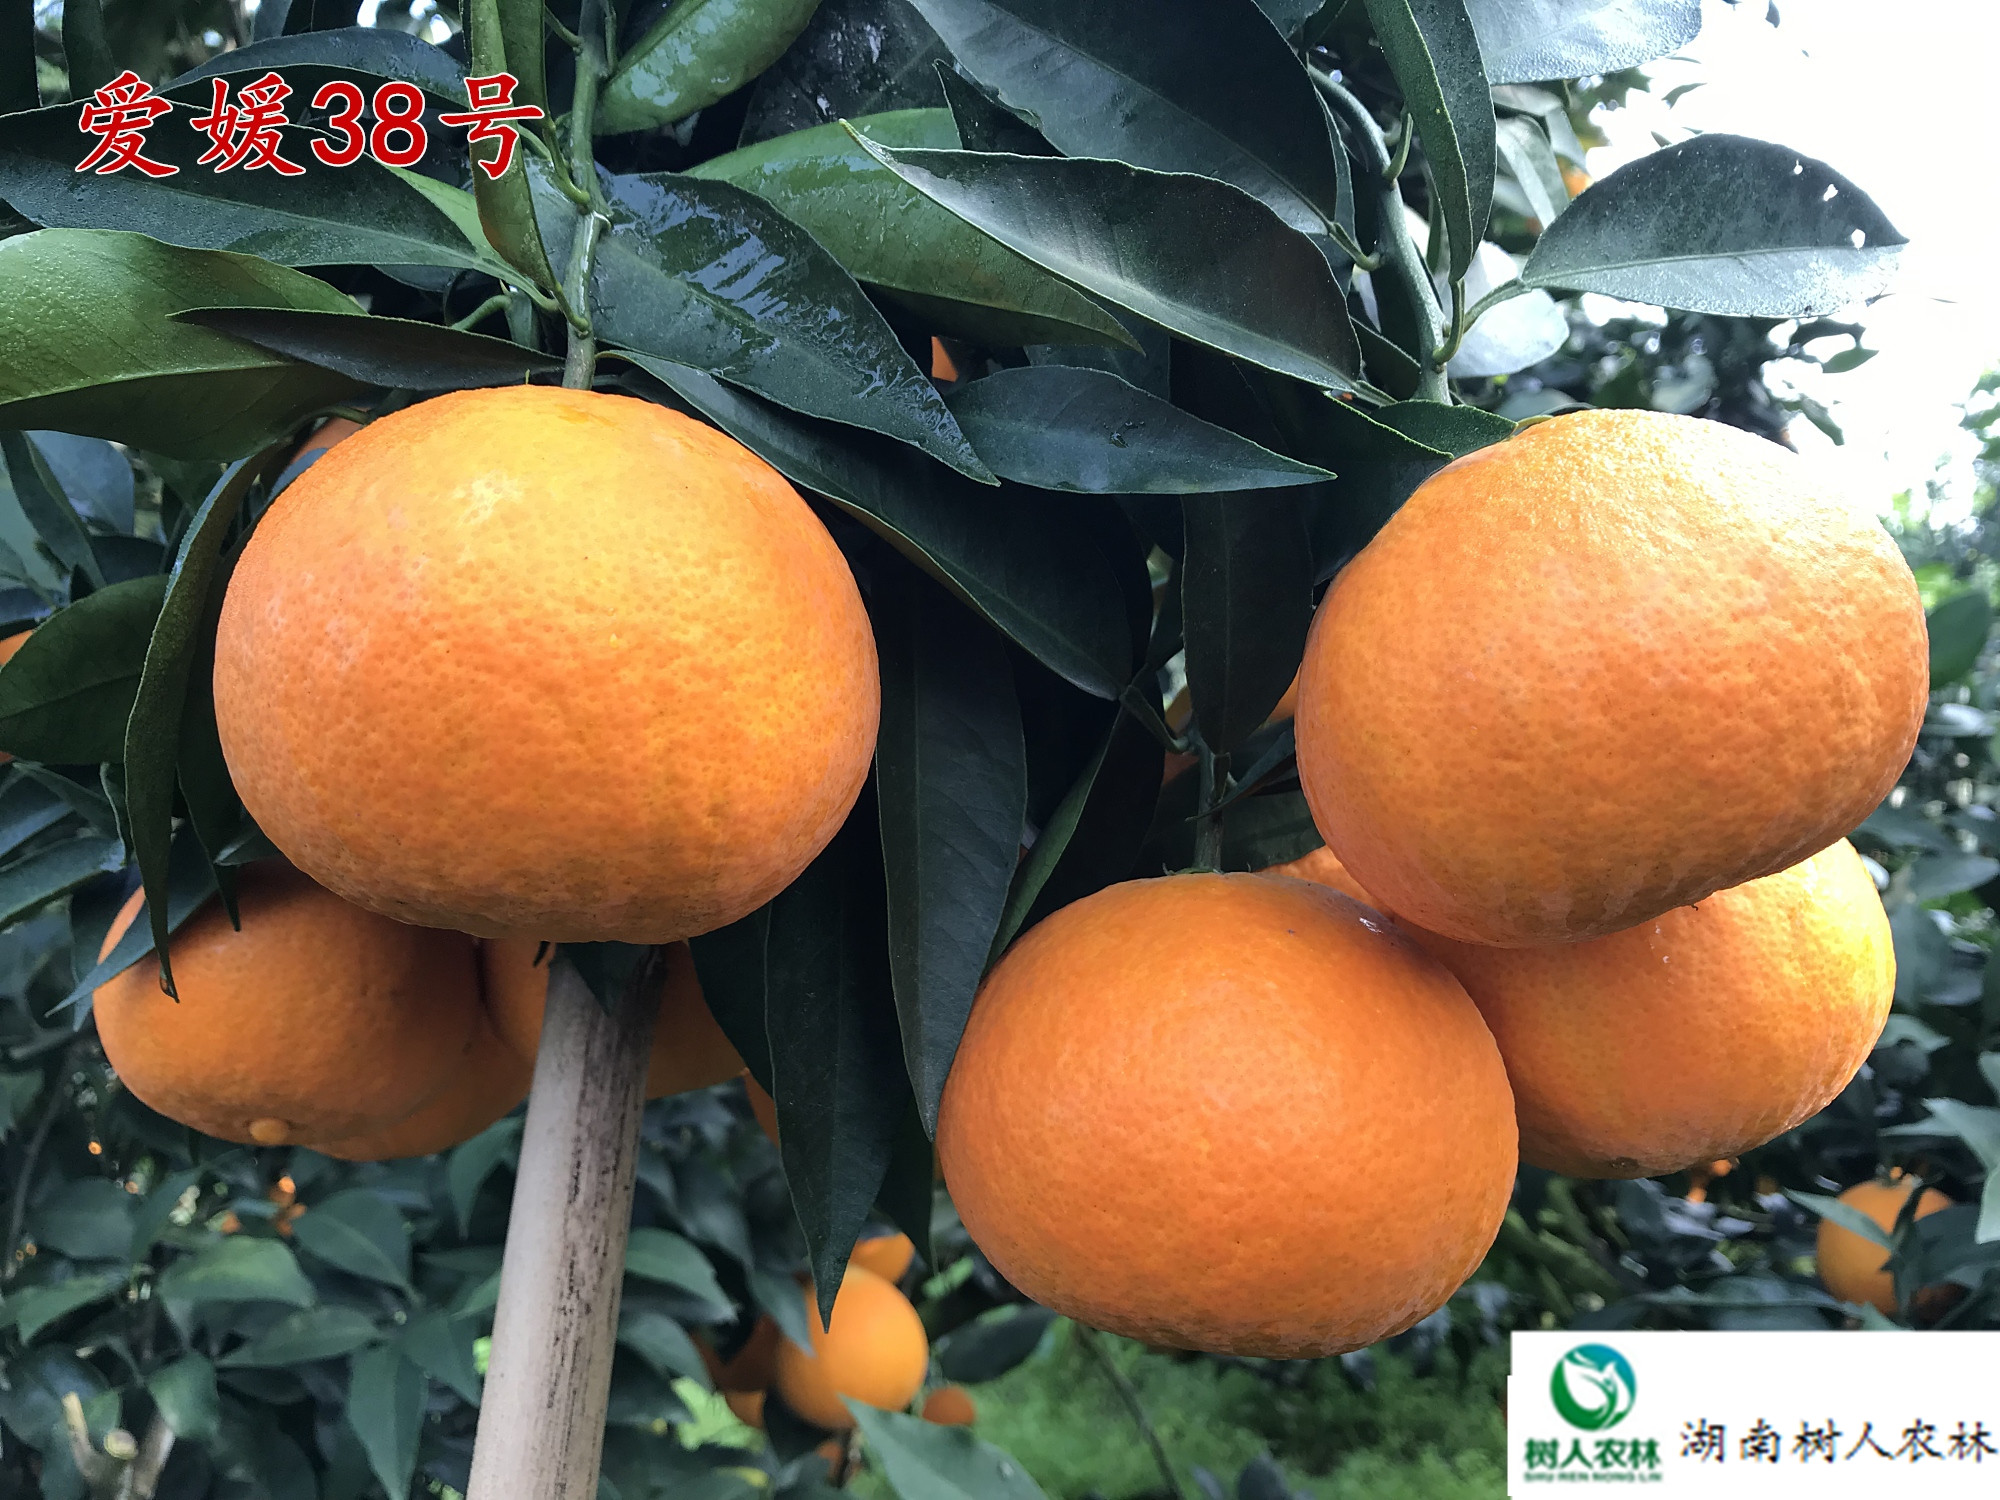 网红果冻橙爱媛38号红美人柑橘苗签订合同纯度保证顺丰包邮7